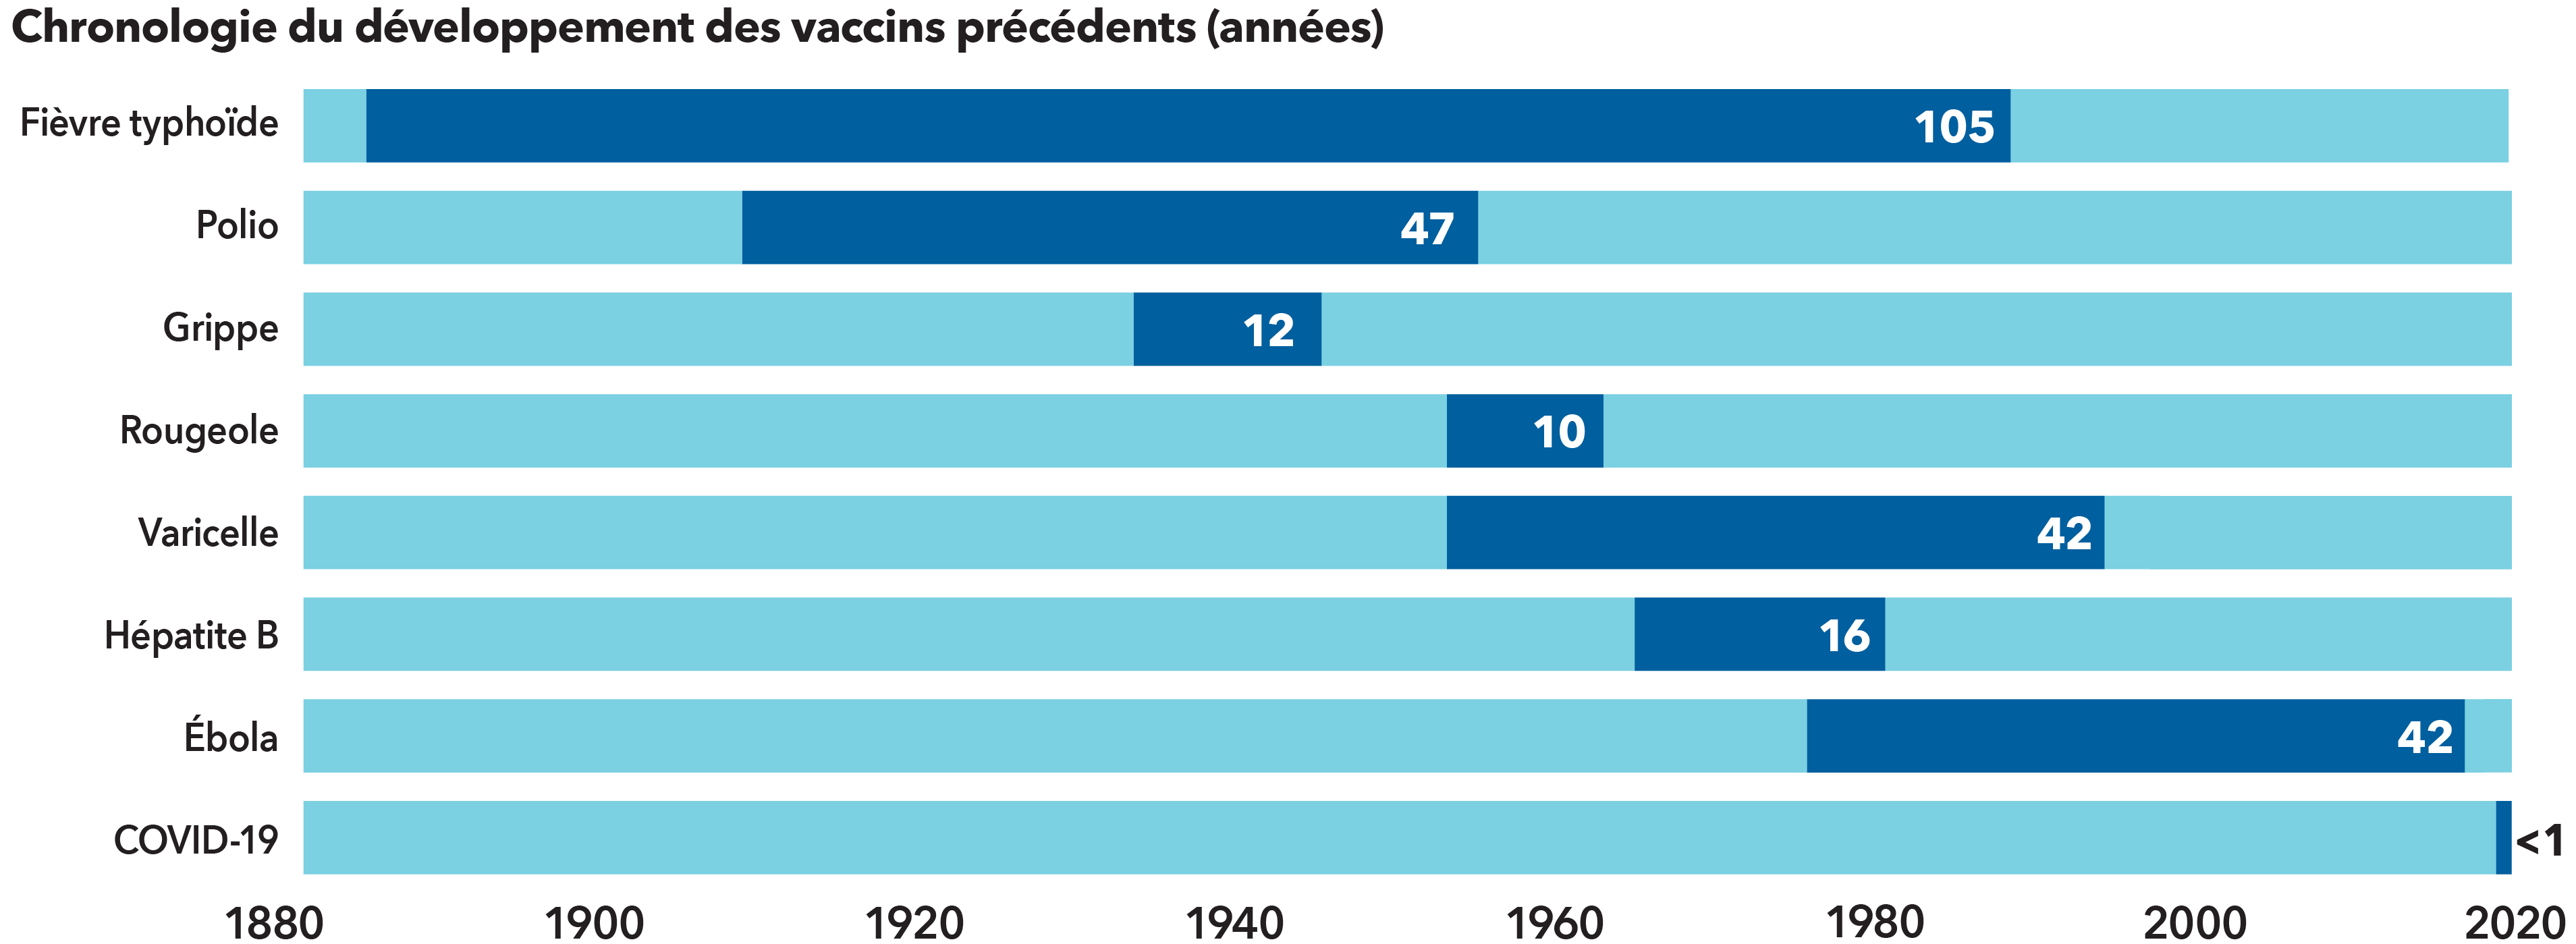 L’image présente une chronologie du développement des vaccins et l’année où ils ont été homologués aux États-Unis, mesurée en mois de 1880 à 2020. Il a fallu 105 ans pour développer le vaccin contre la fièvre typhoïde. Le vaccin contre la polio a pris 47 ans. Le vaccin contre la grippe a pris 12 ans. Le vaccin contre la rougeole a pris 10 ans. Il a fallu 42 ans pour mettre au point le vaccin contre la varicelle. Le vaccin contre l’hépatite B a pris 16 ans. Le vaccin contre le virus Ebola a pris 42 ans. Et les vaccins contre la COVID-19 ont pris moins d’un an.